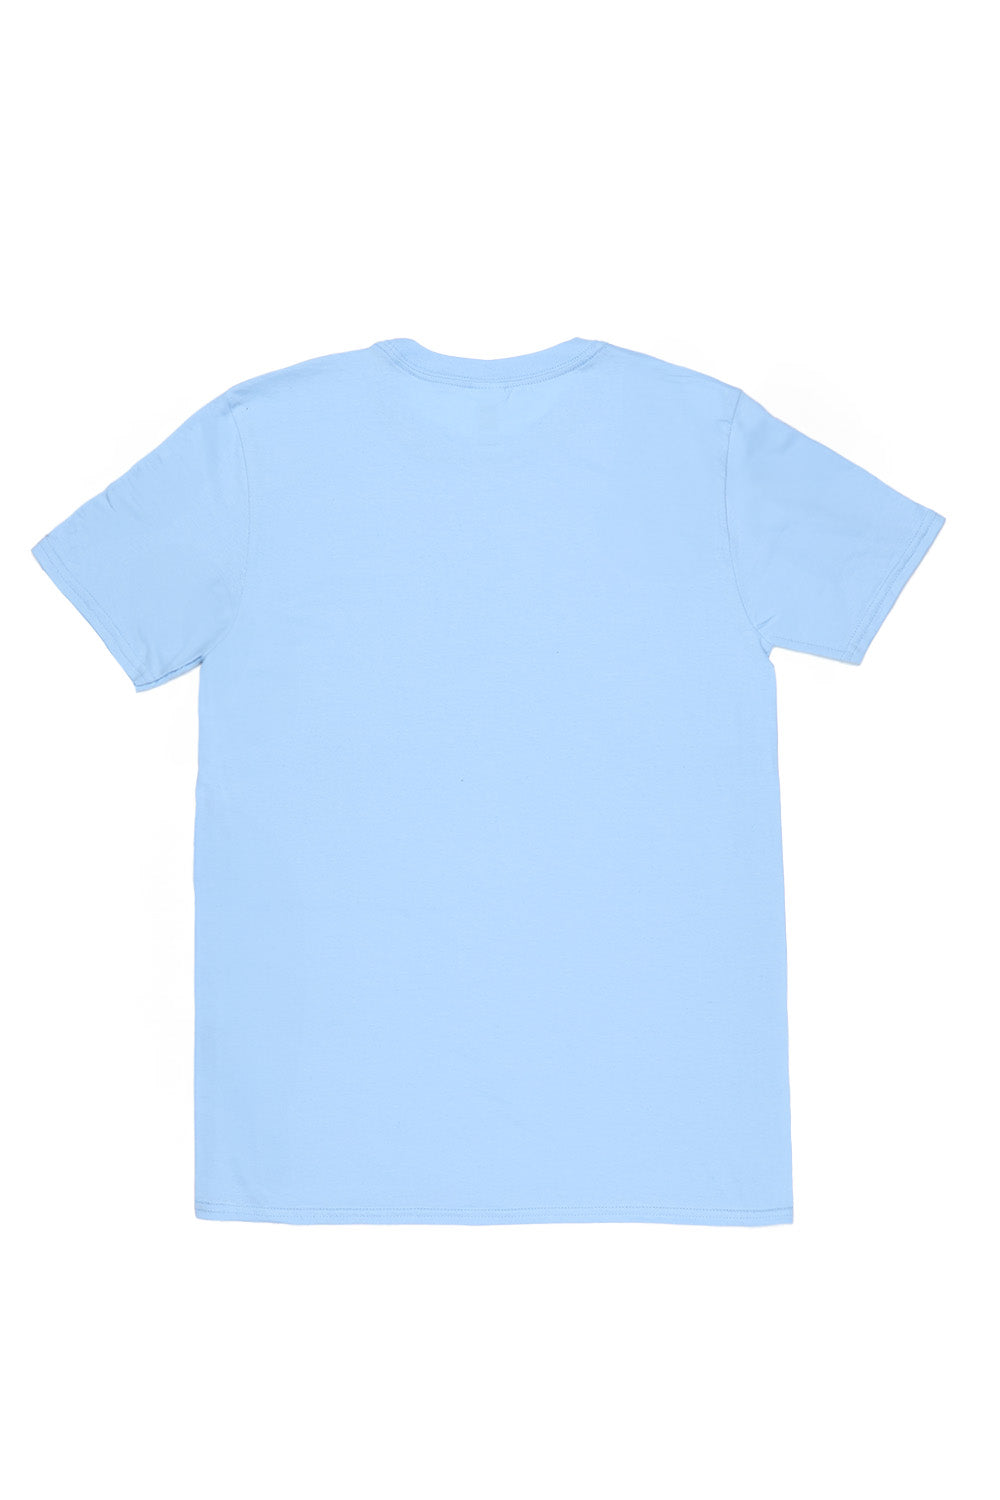 Las Vegas T-Shirt in Light Blue (Custom Packs)